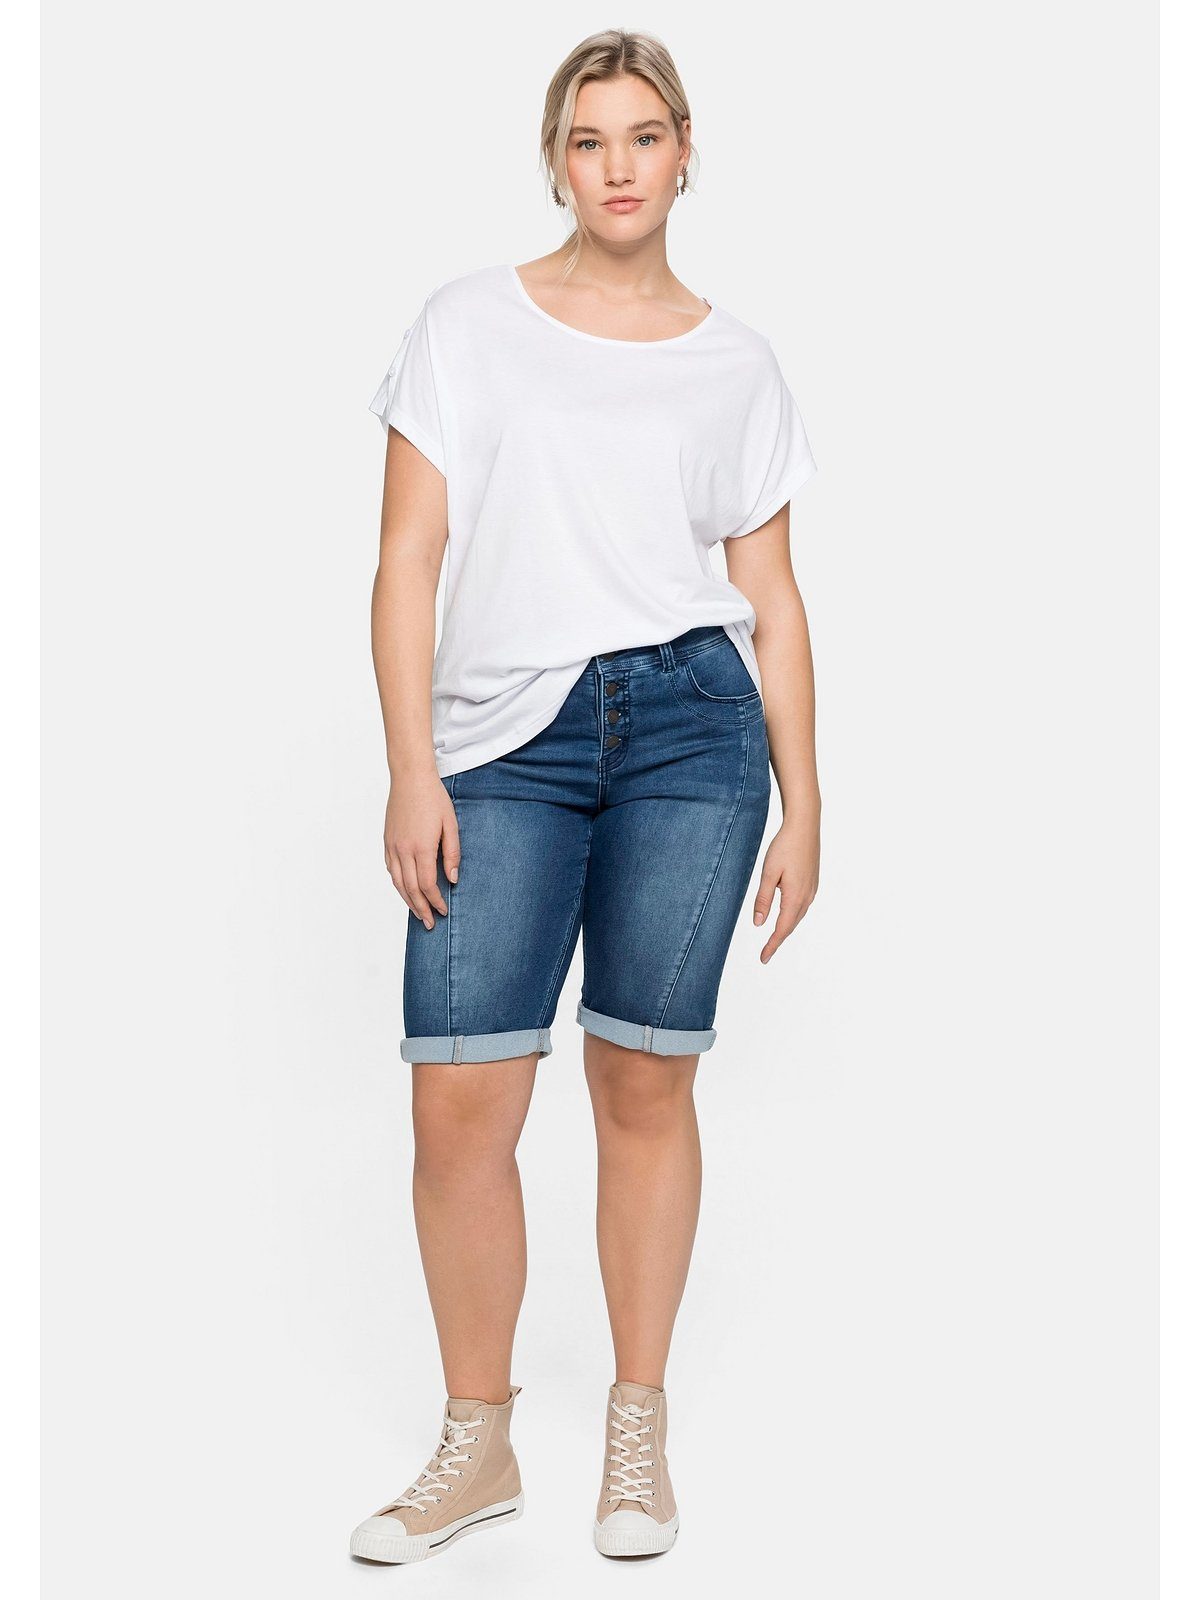 Große in A-Linie T-Shirt Schulterpartie, Sheego mit leichter weiß Größen offener